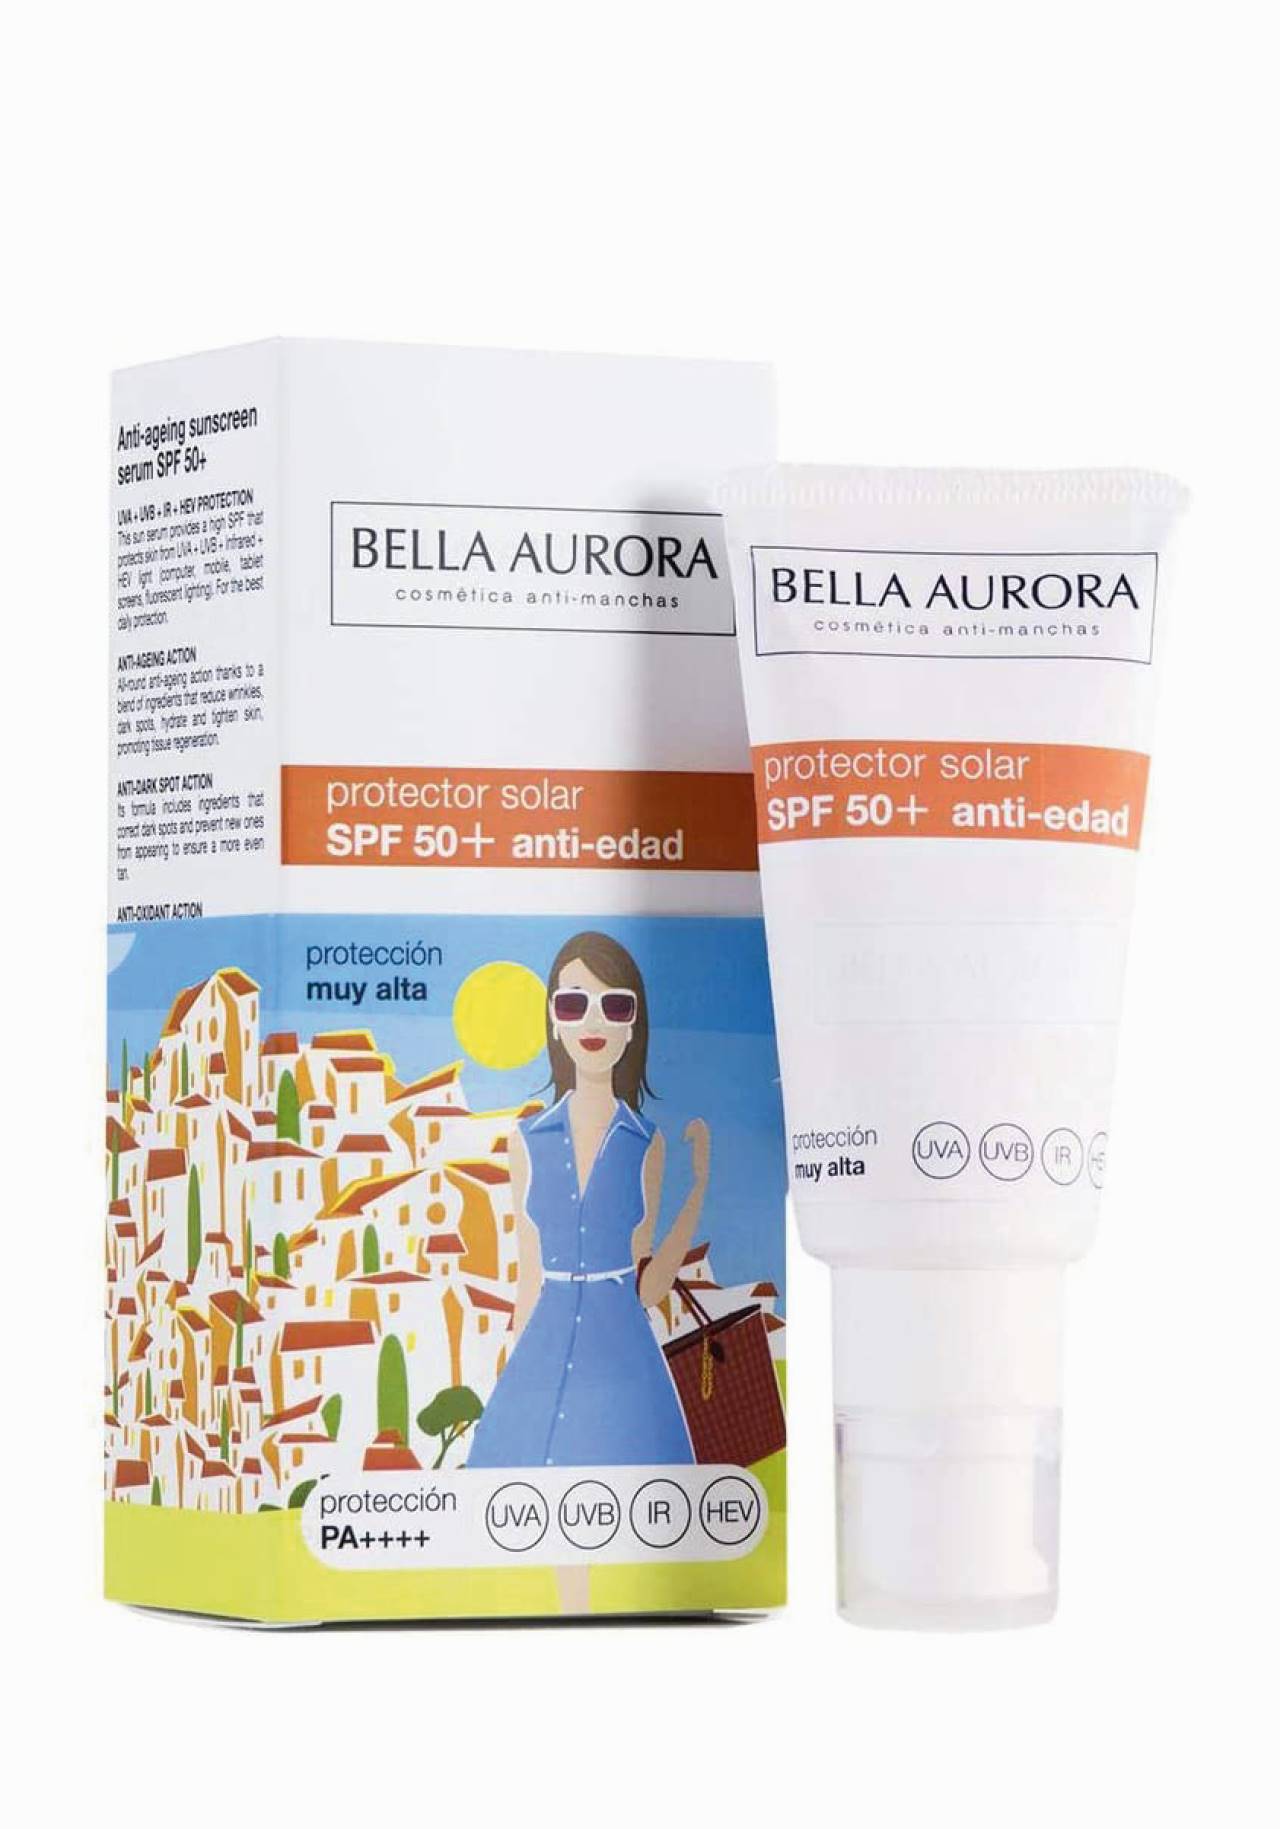 Bella Aurora Protector solar FPS 50+ Anti-edad Protectores solares faciales de farmacia por menos de 15€